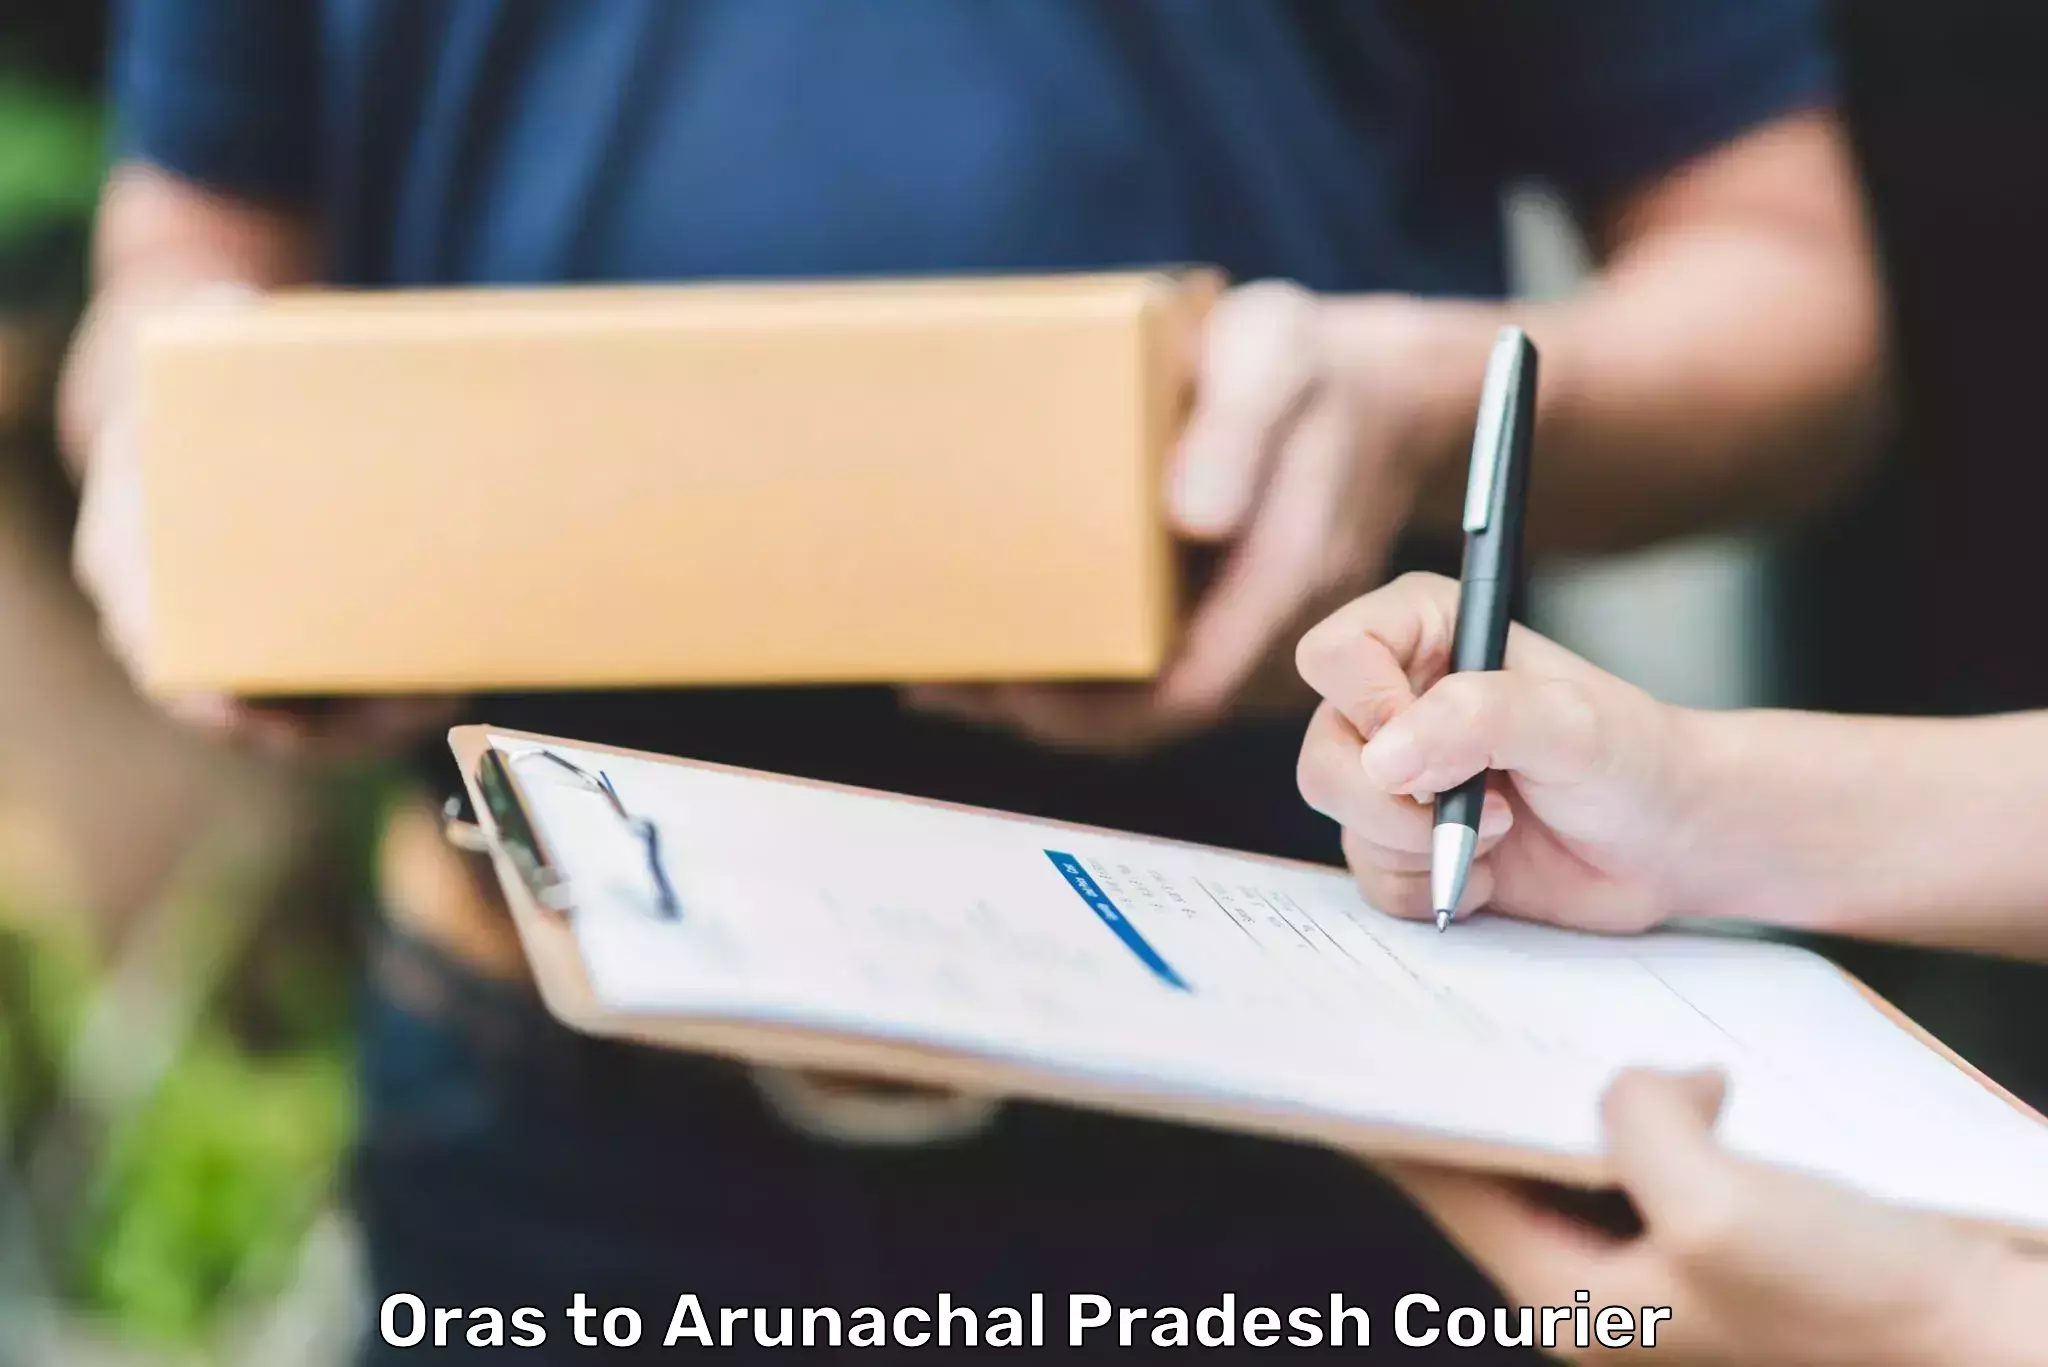 Doorstep delivery service Oras to Arunachal Pradesh